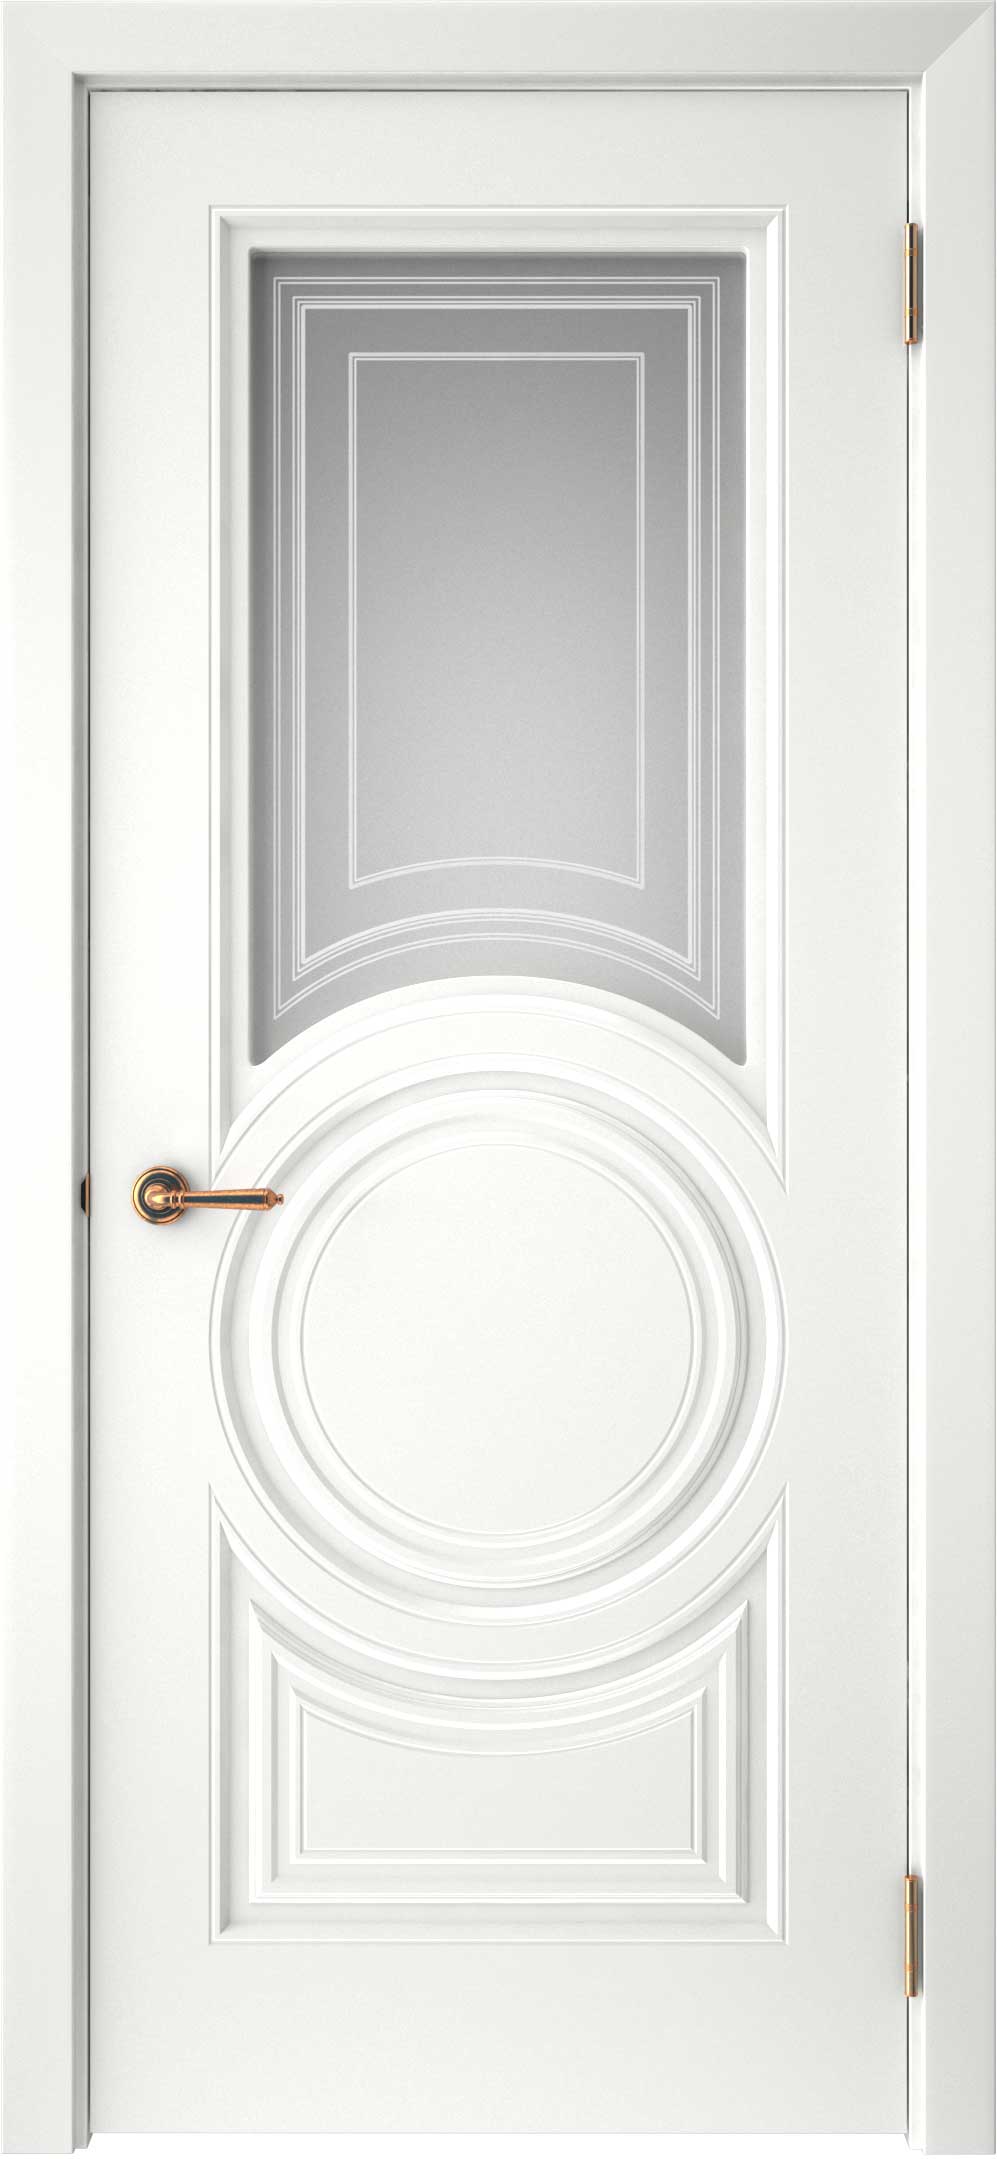 Двери крашеные (Эмаль) ТЕКОНА Смальта-45 со стеклом Белый ral размер 200 х 60 см. артикул F0000093316